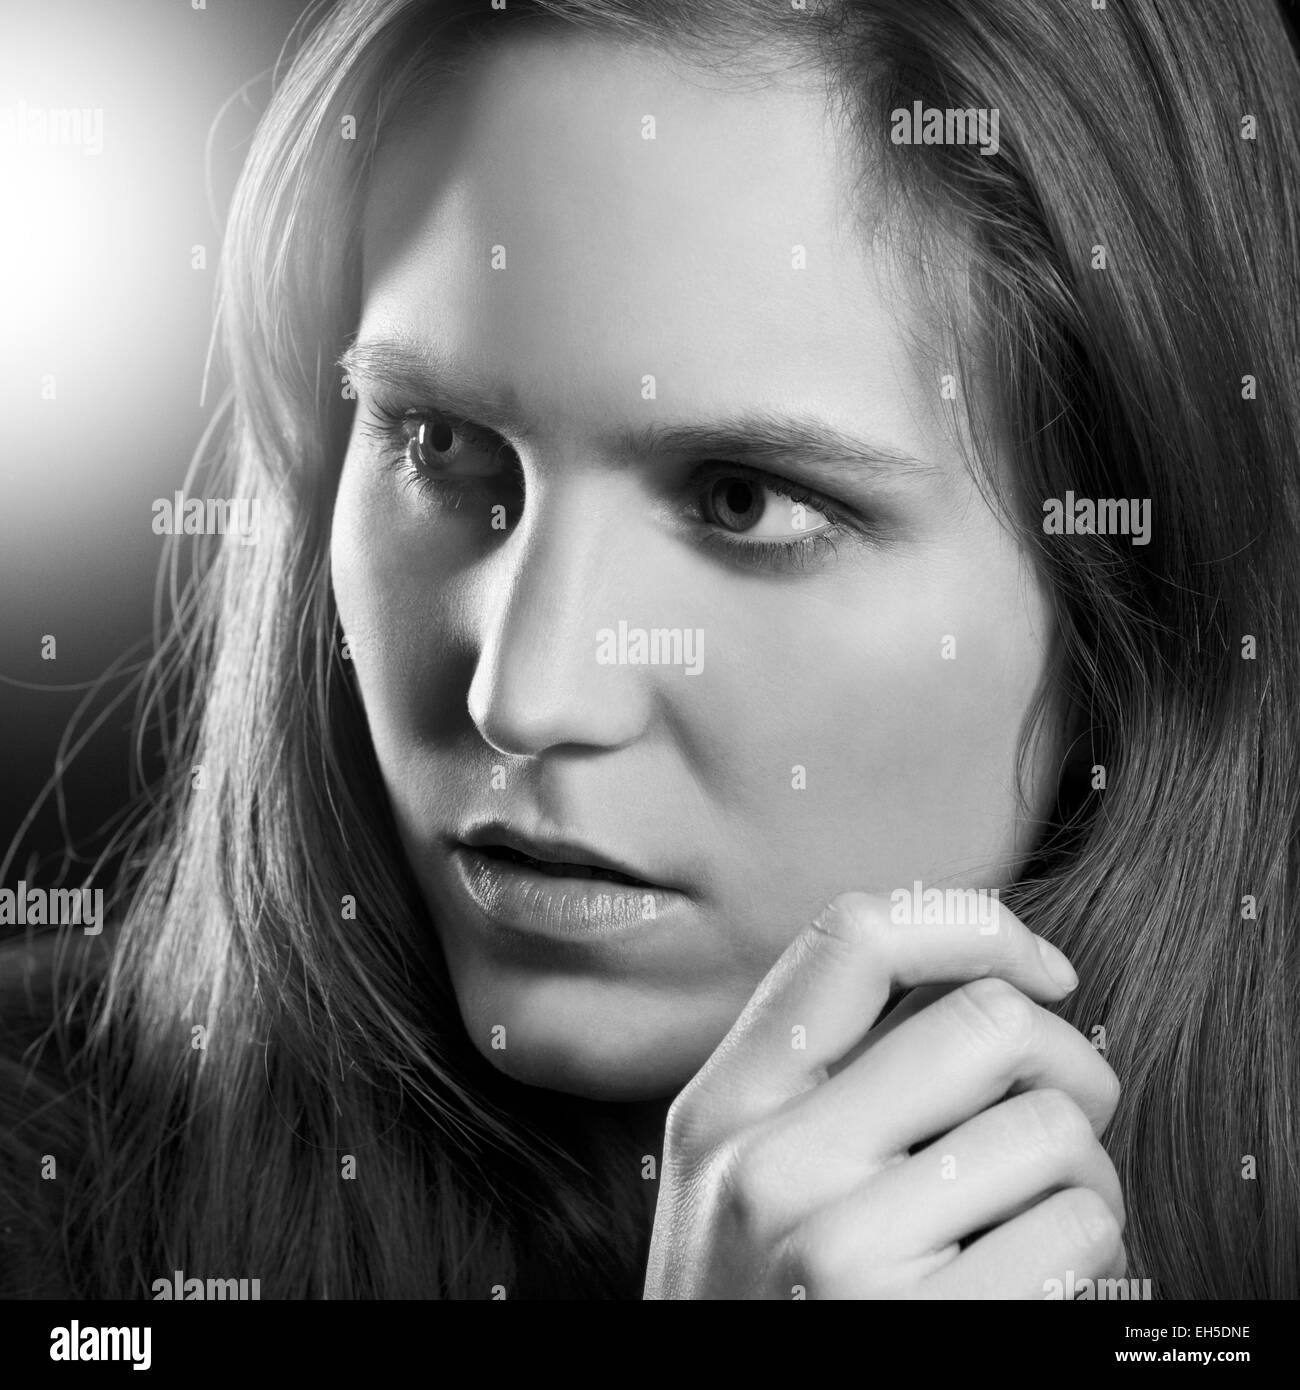 Filmartig oder filmischen Look hochwertige Studioaufnahme einer jungen natürlichen Frau / Mädchen mit Lowkey Beleuchtung. Schwarzer Hintergrund. Stockfoto